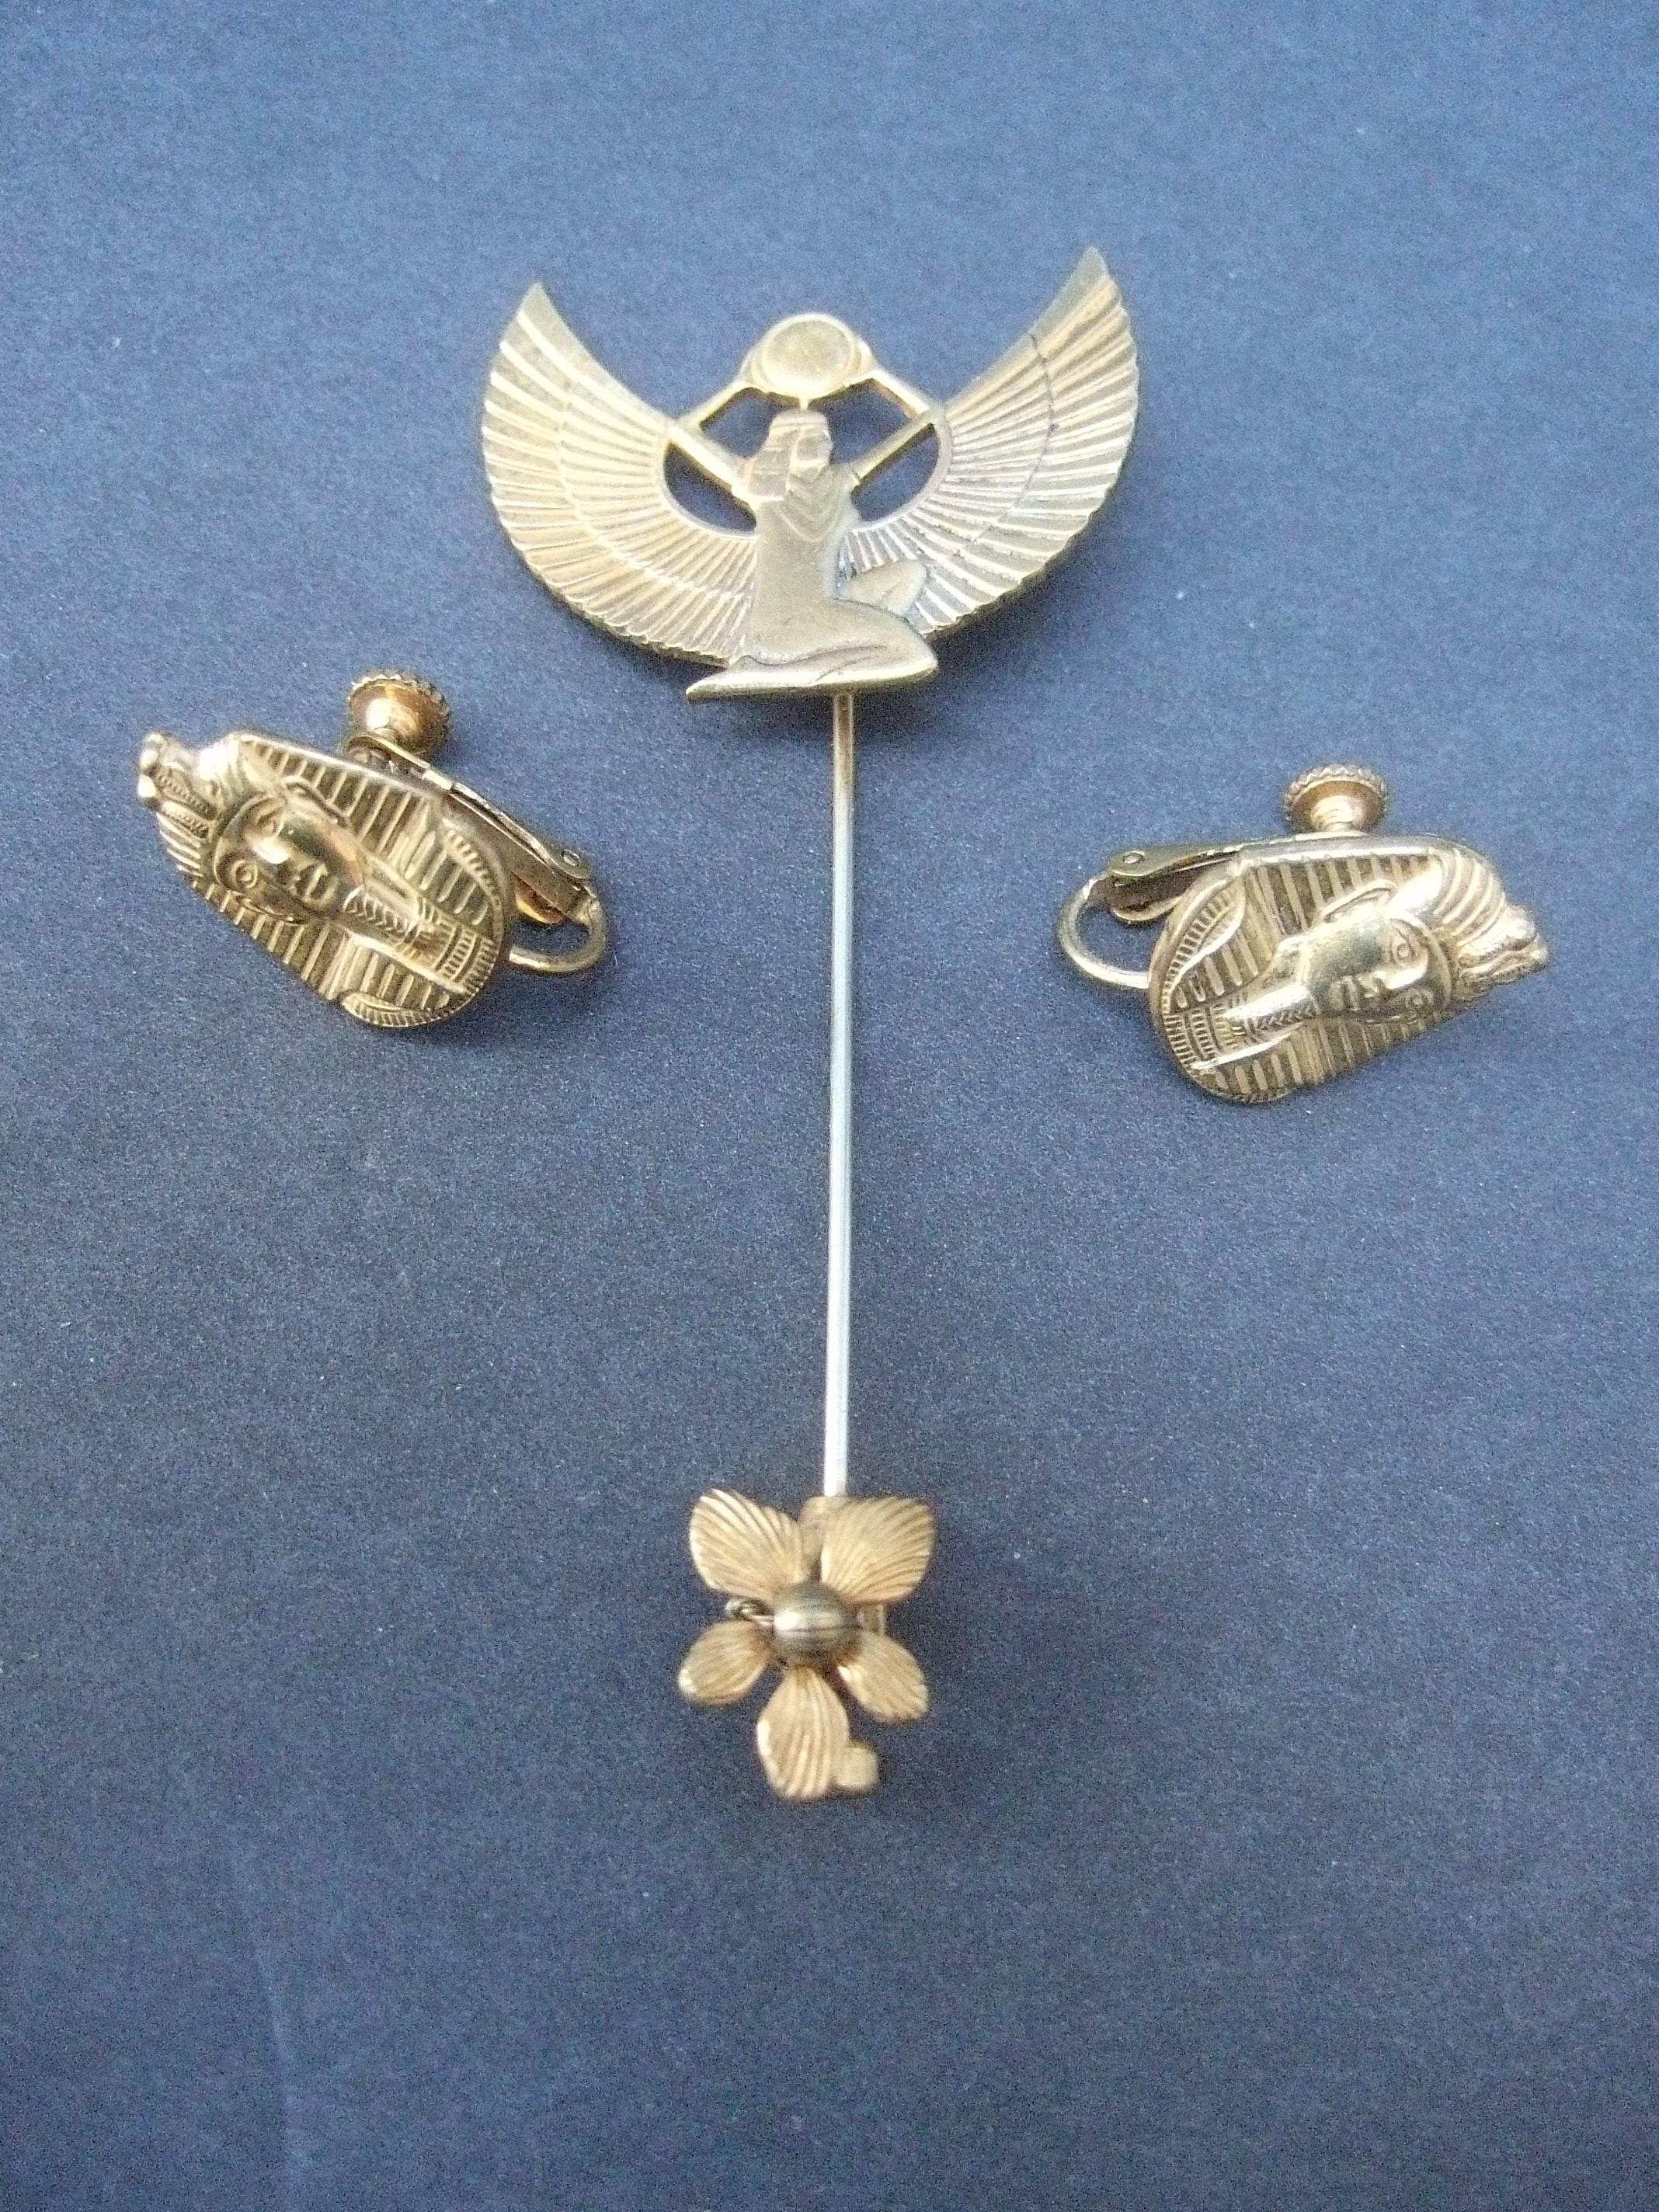 Miriam Haskell Épingle à bâton et boucles d'oreilles de style égyptien vers 1970
Cette épingle à bâton unique est ornée d'un motif égyptien stylisé.
déesse ailée

Les boucles d'oreilles sont ornées d'un masque de pharaon. 
L'épingle et les